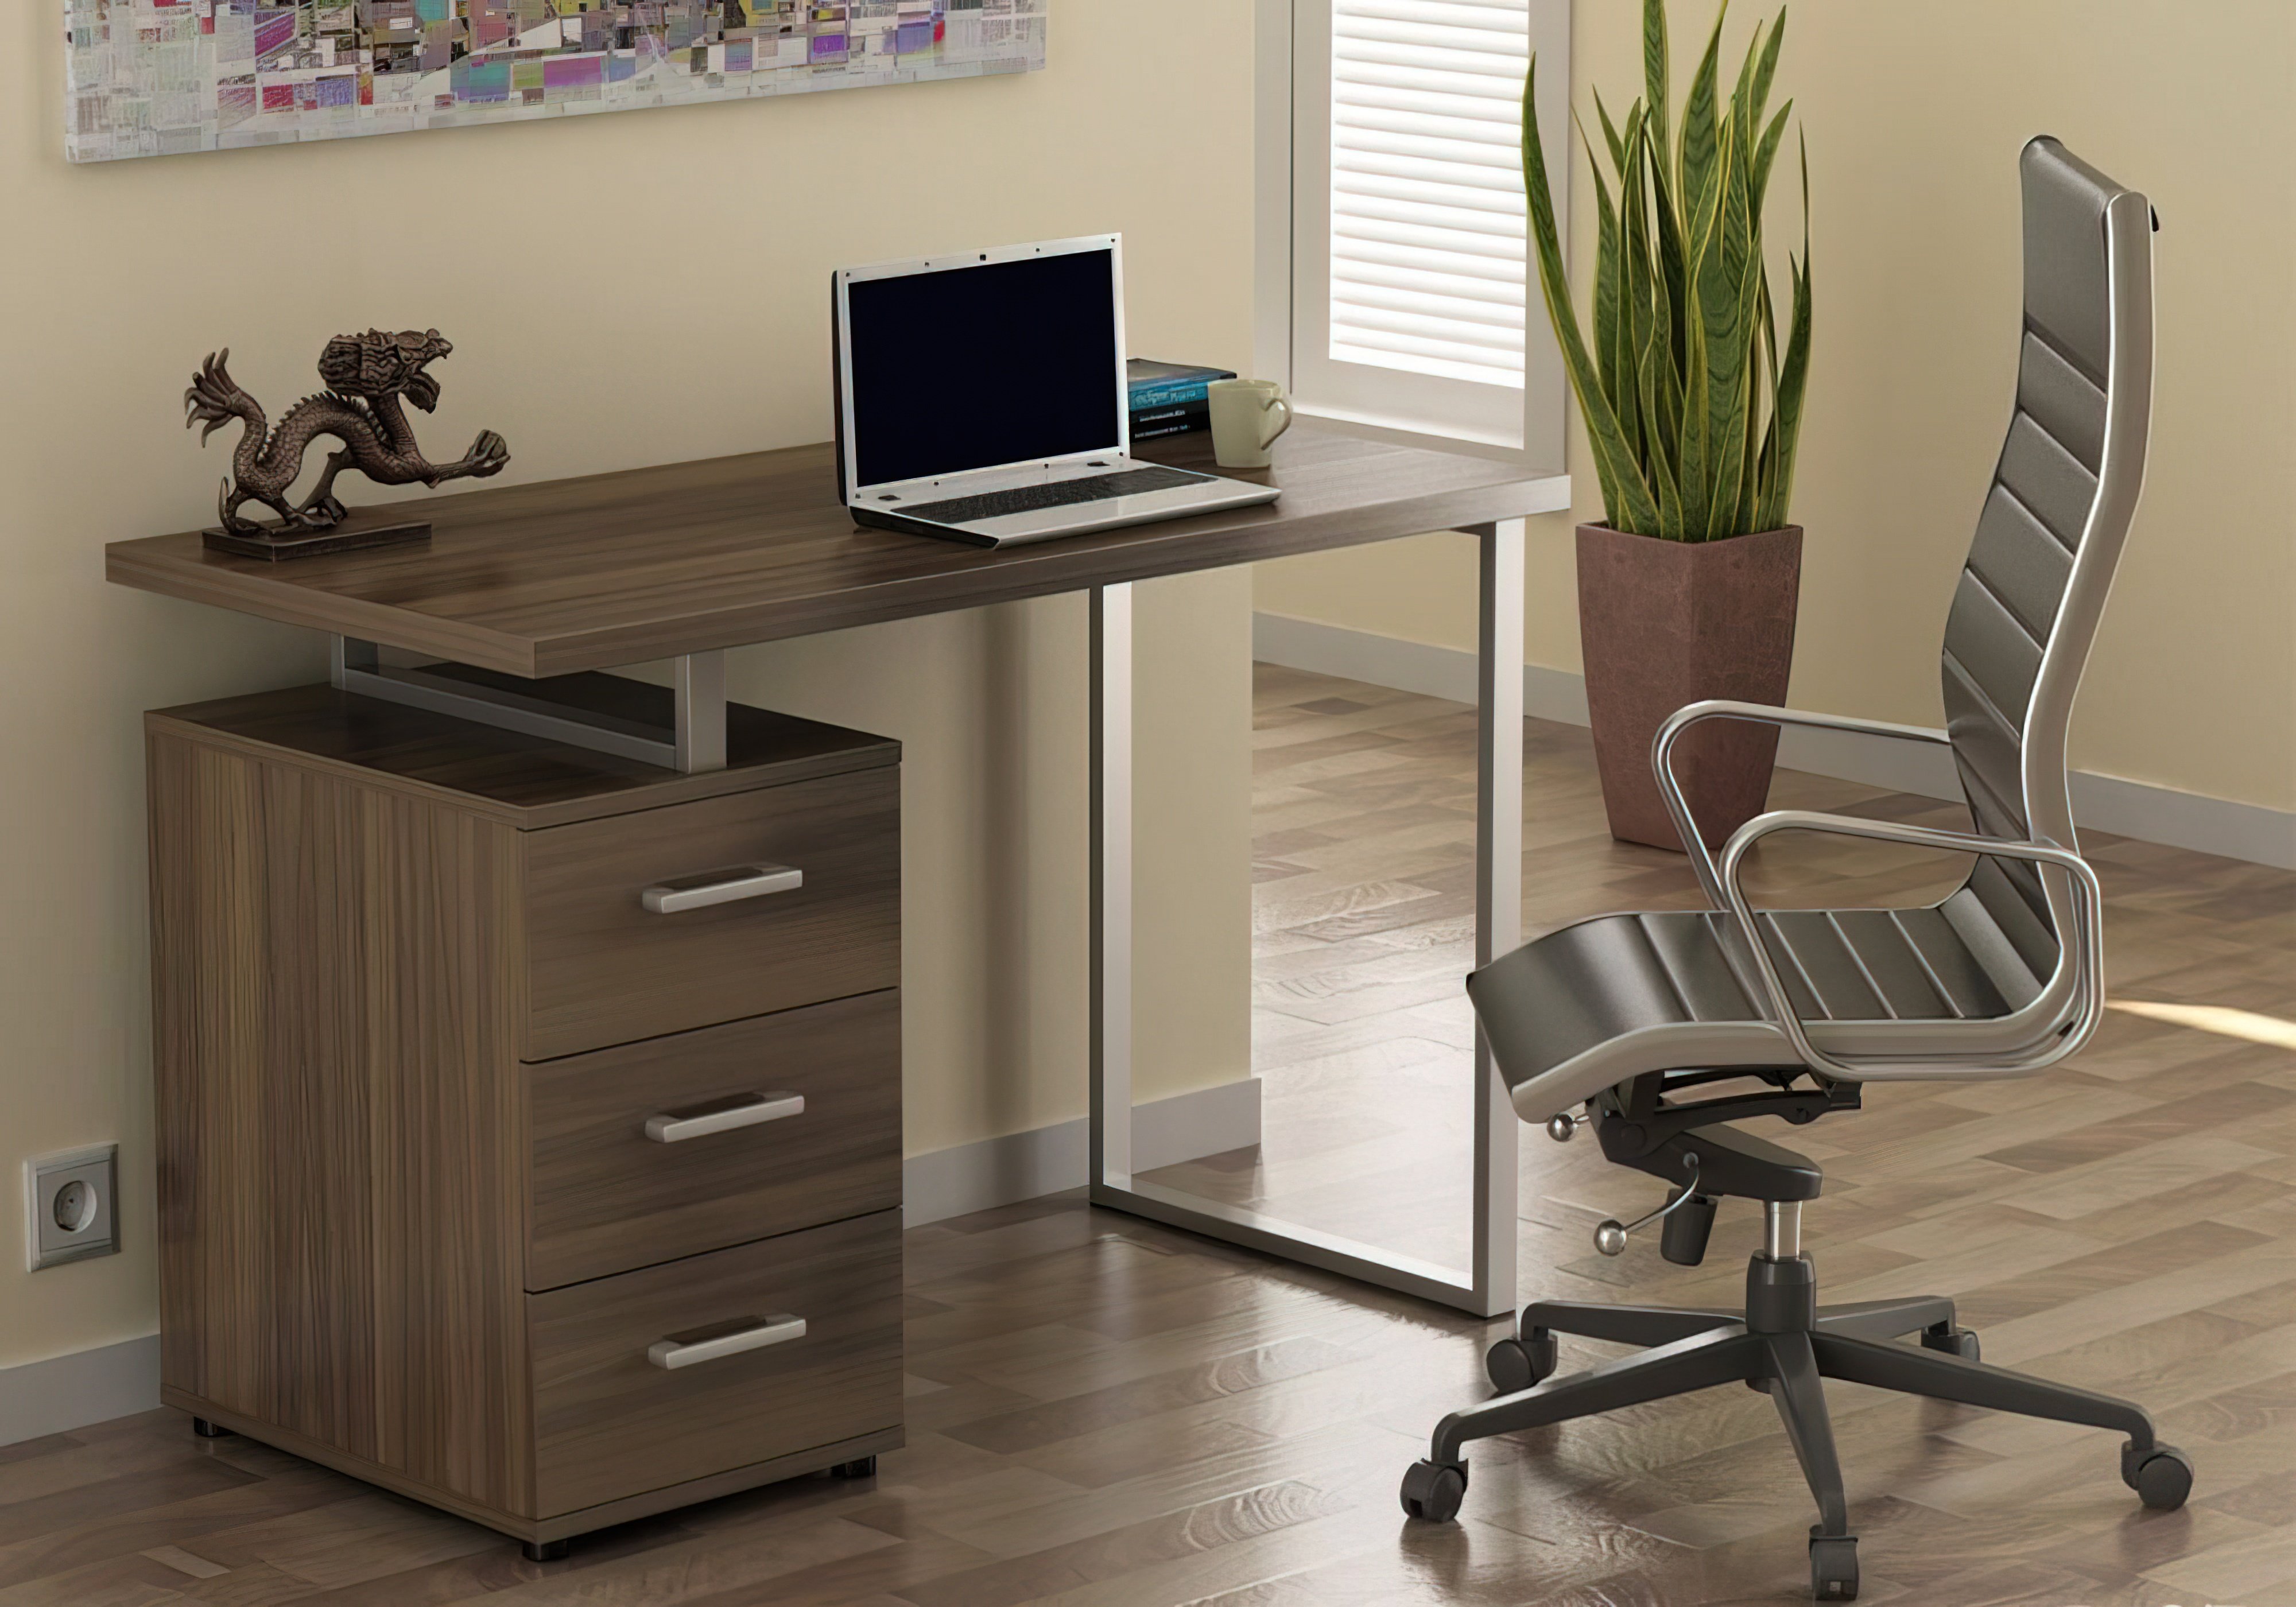  Купить Офисные столы Стол офисный "L-27" Loft Design